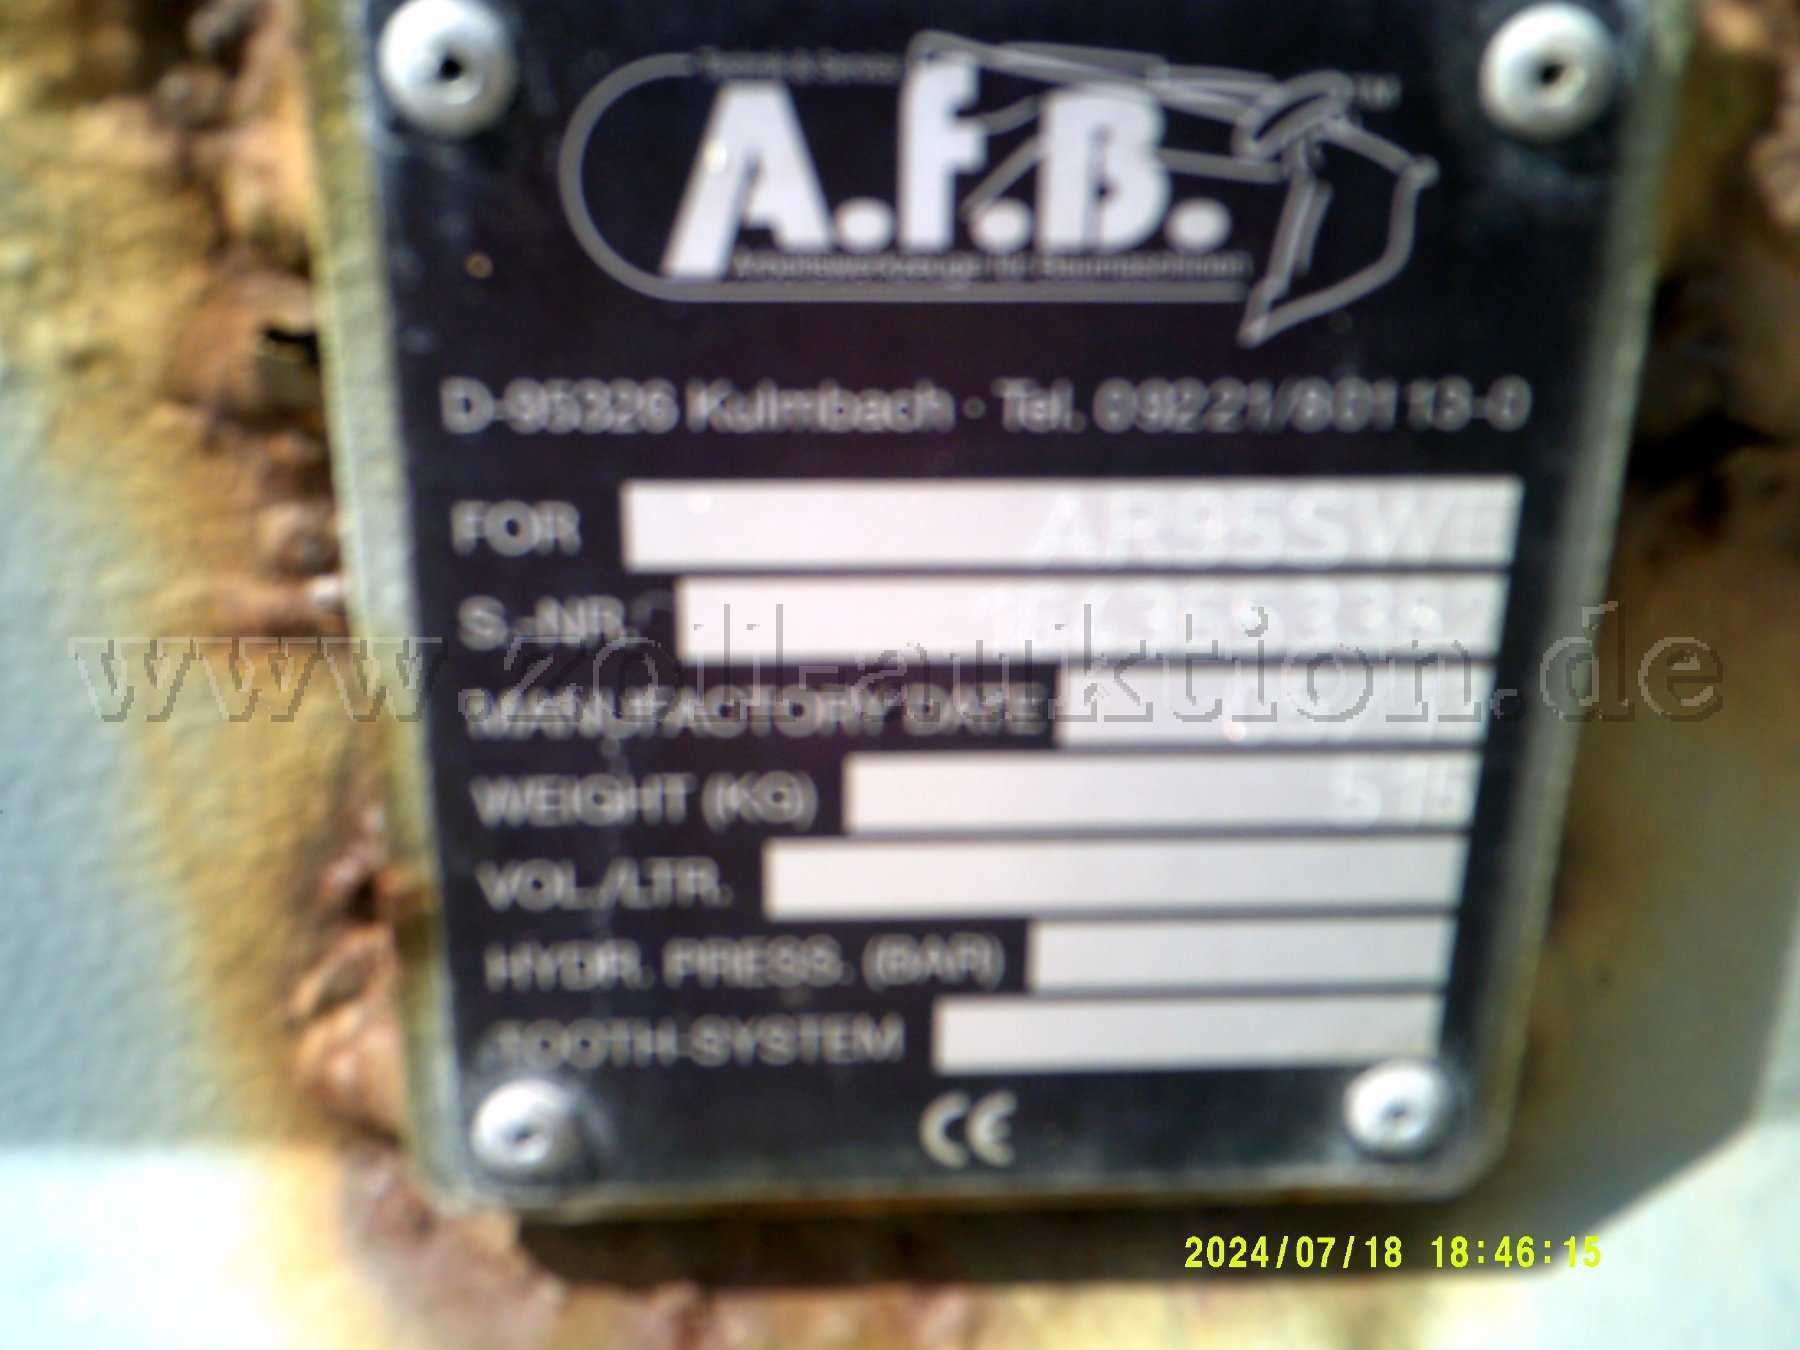 Typenschid Schieber - nicht lesbar
A.f.B Kulmbach
For AR95SWE
S-Nr. 164365382
Gewicht kg 515 
CE-Kennzeichnung
keine weiteren Daten vorhanden